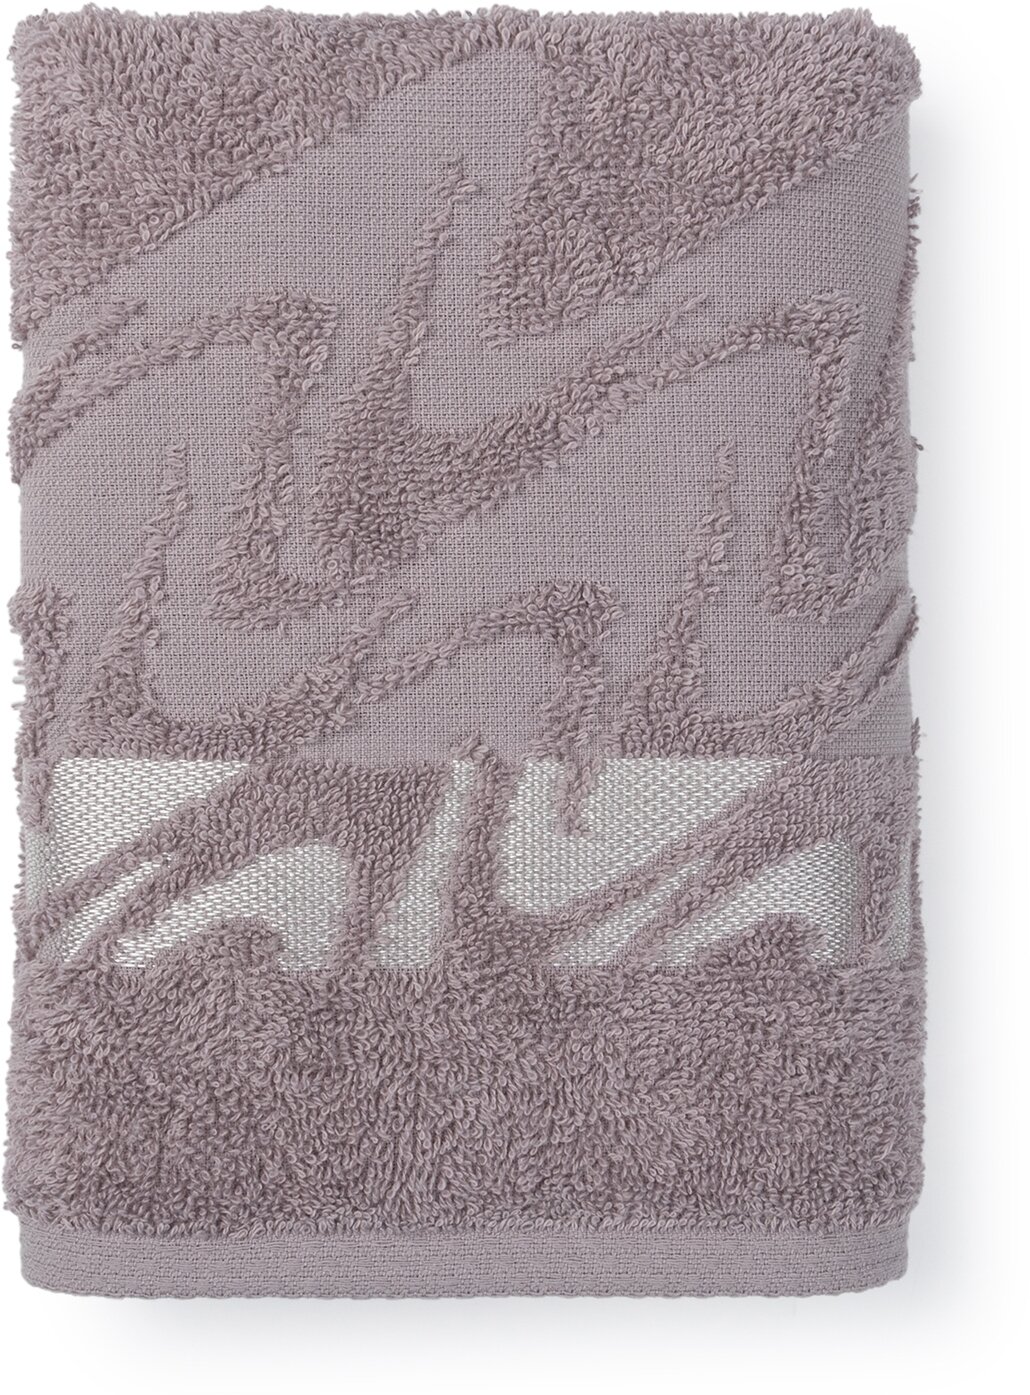 Полотенце махровое для лица и рук, Донецкая мануфактура,Brilliance, 50Х90 см, цвет:серый, 100% хлопок - фотография № 4